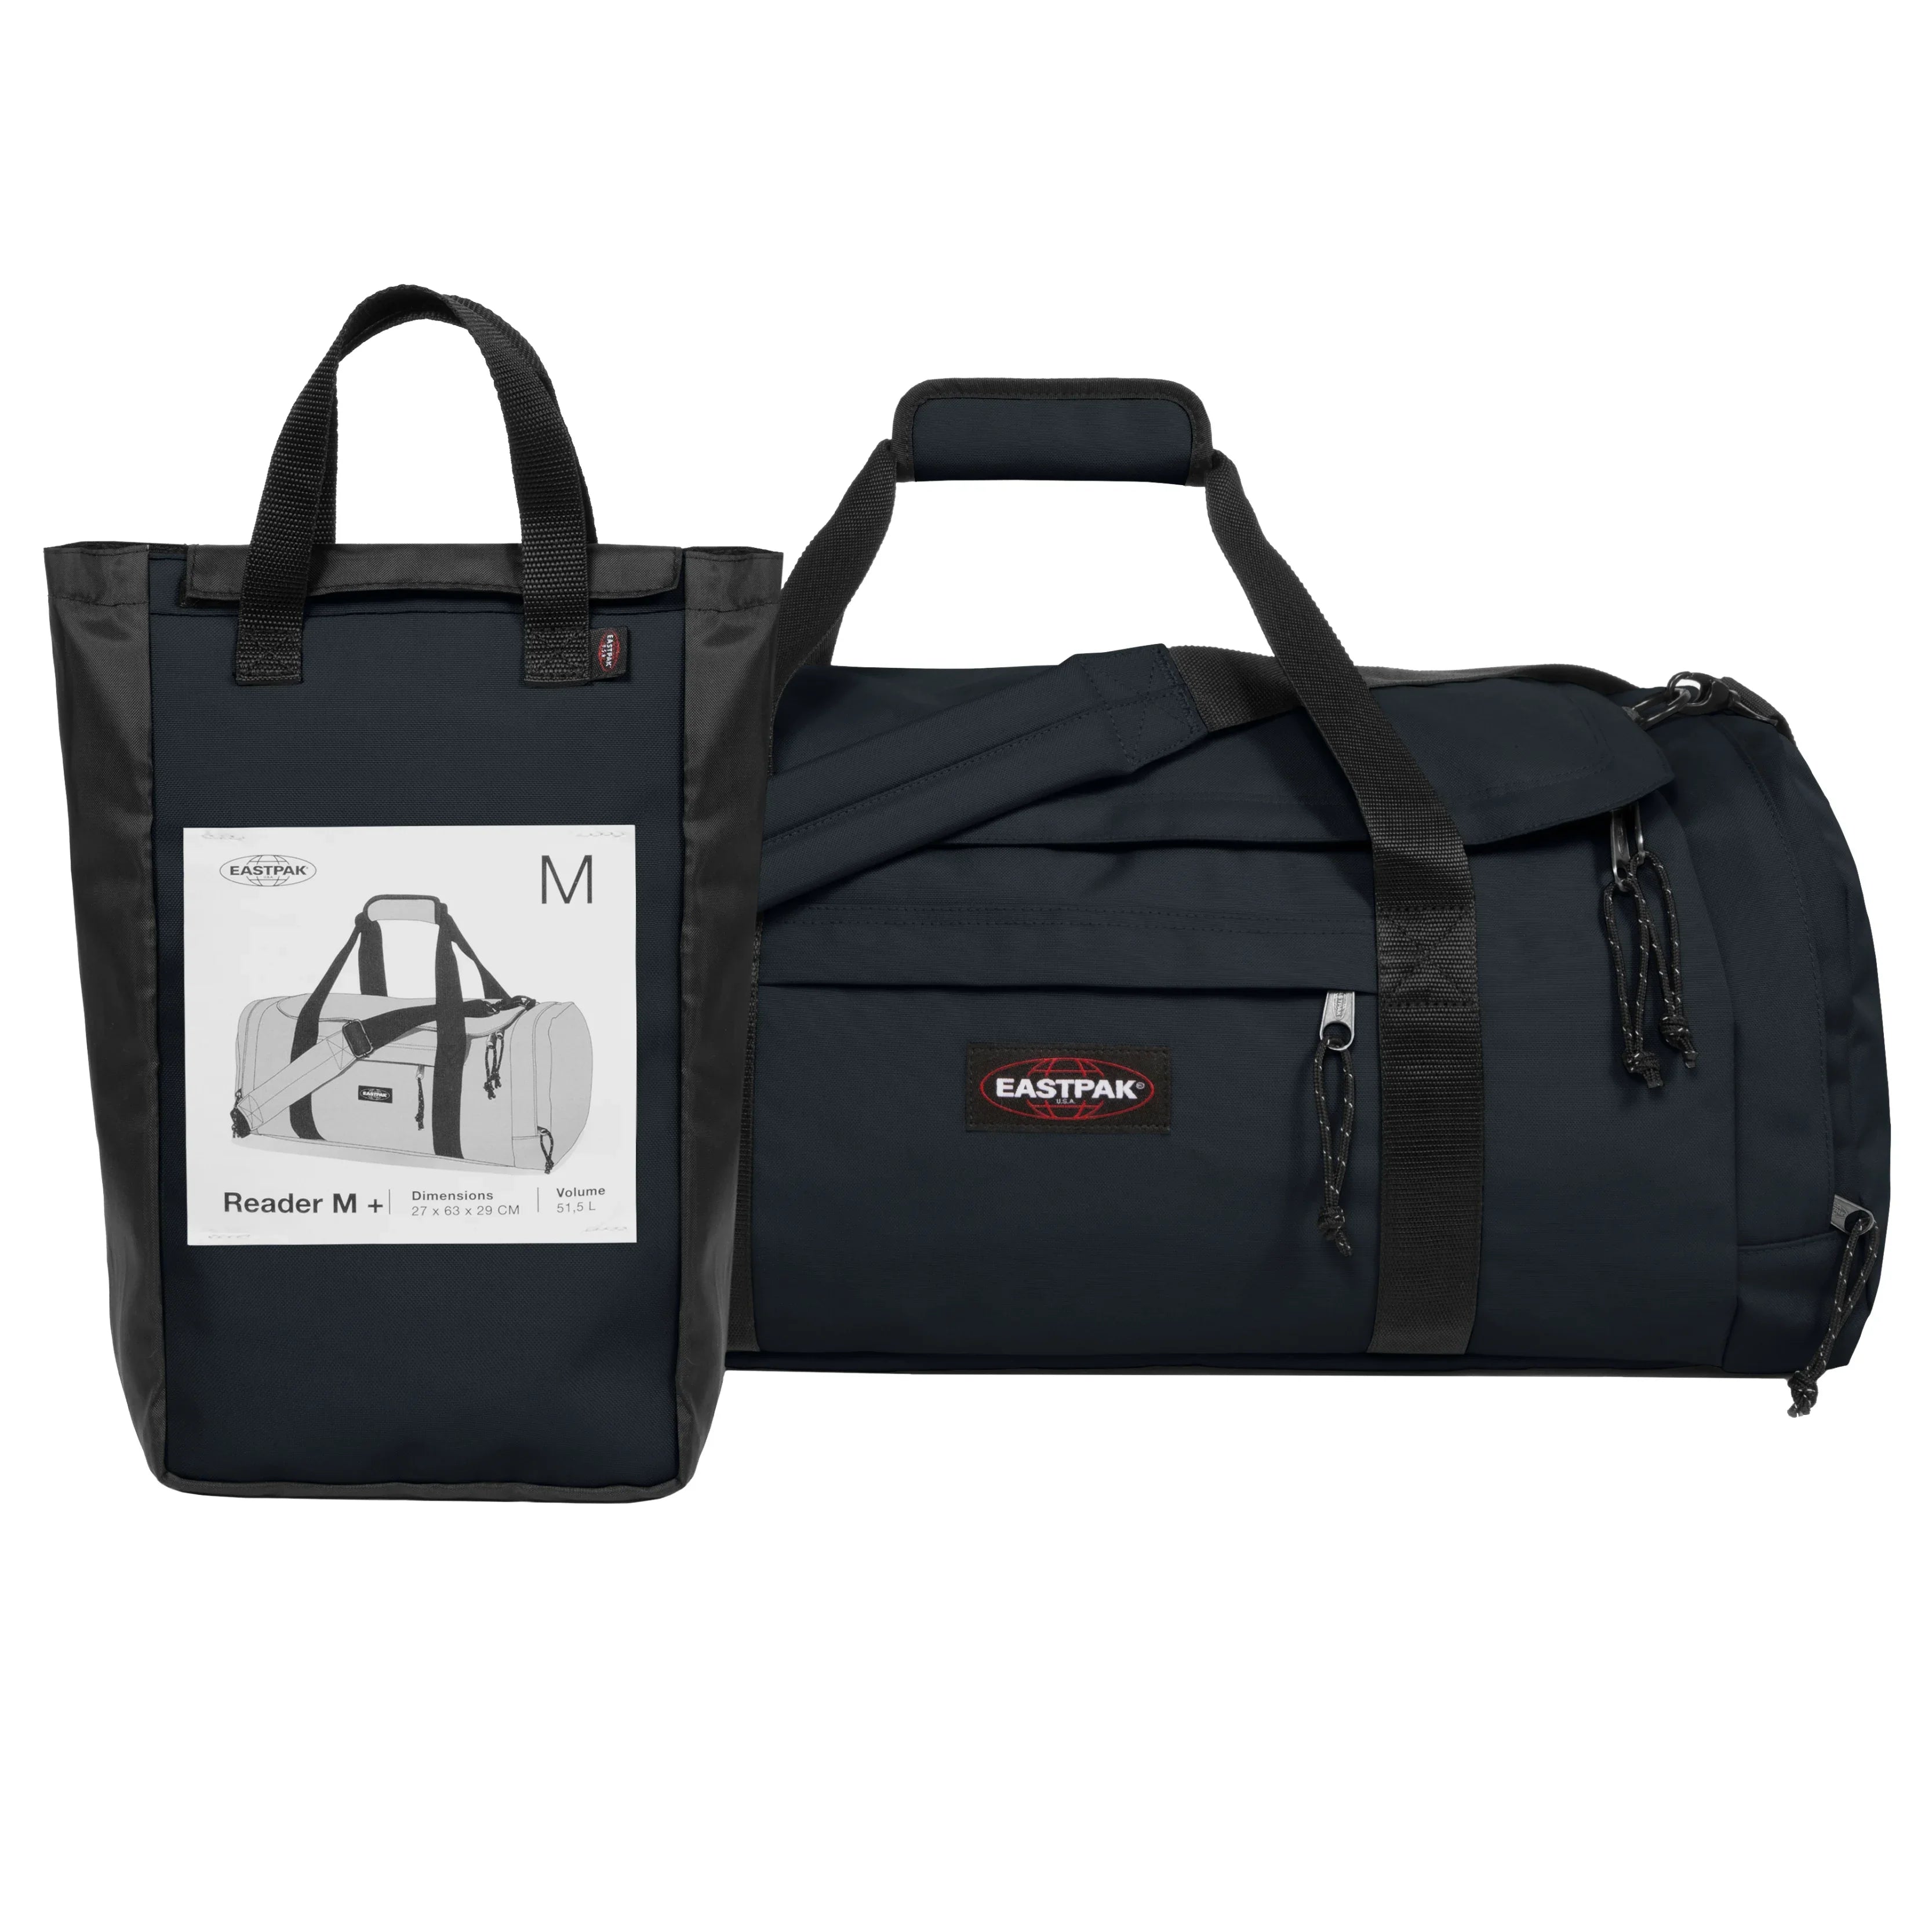 Eastpak Authentic Travel Reader M Plus sac de voyage 63 cm - noir